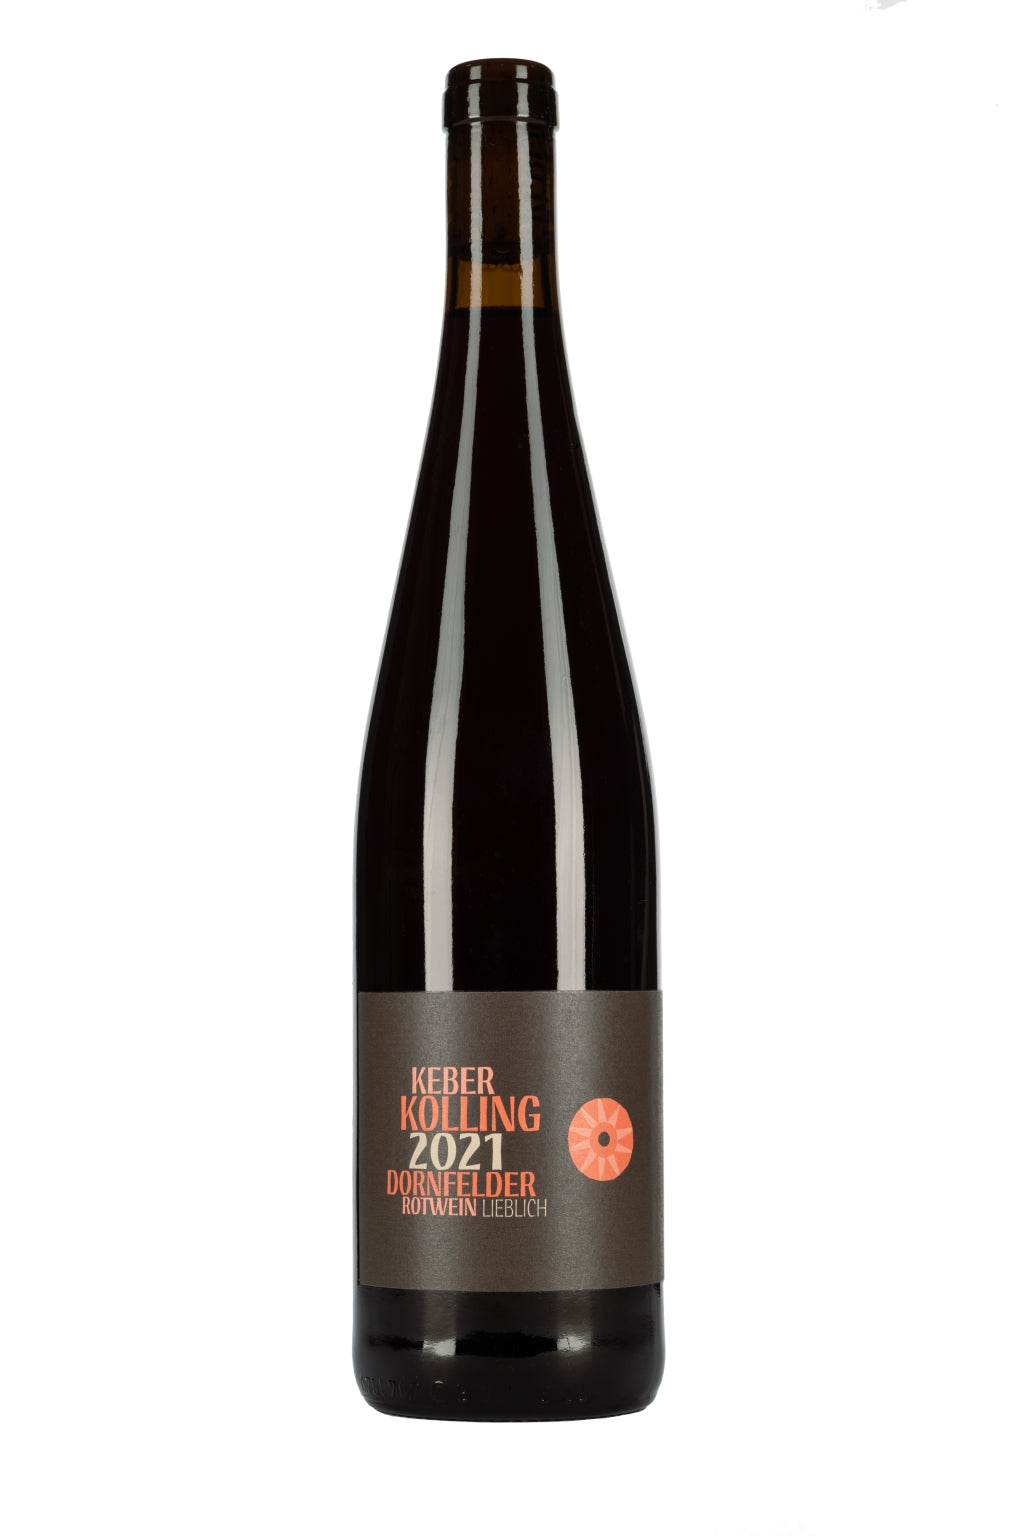 2021er Dornfelder Rotwein lieblich Weingut Keber Kolling –